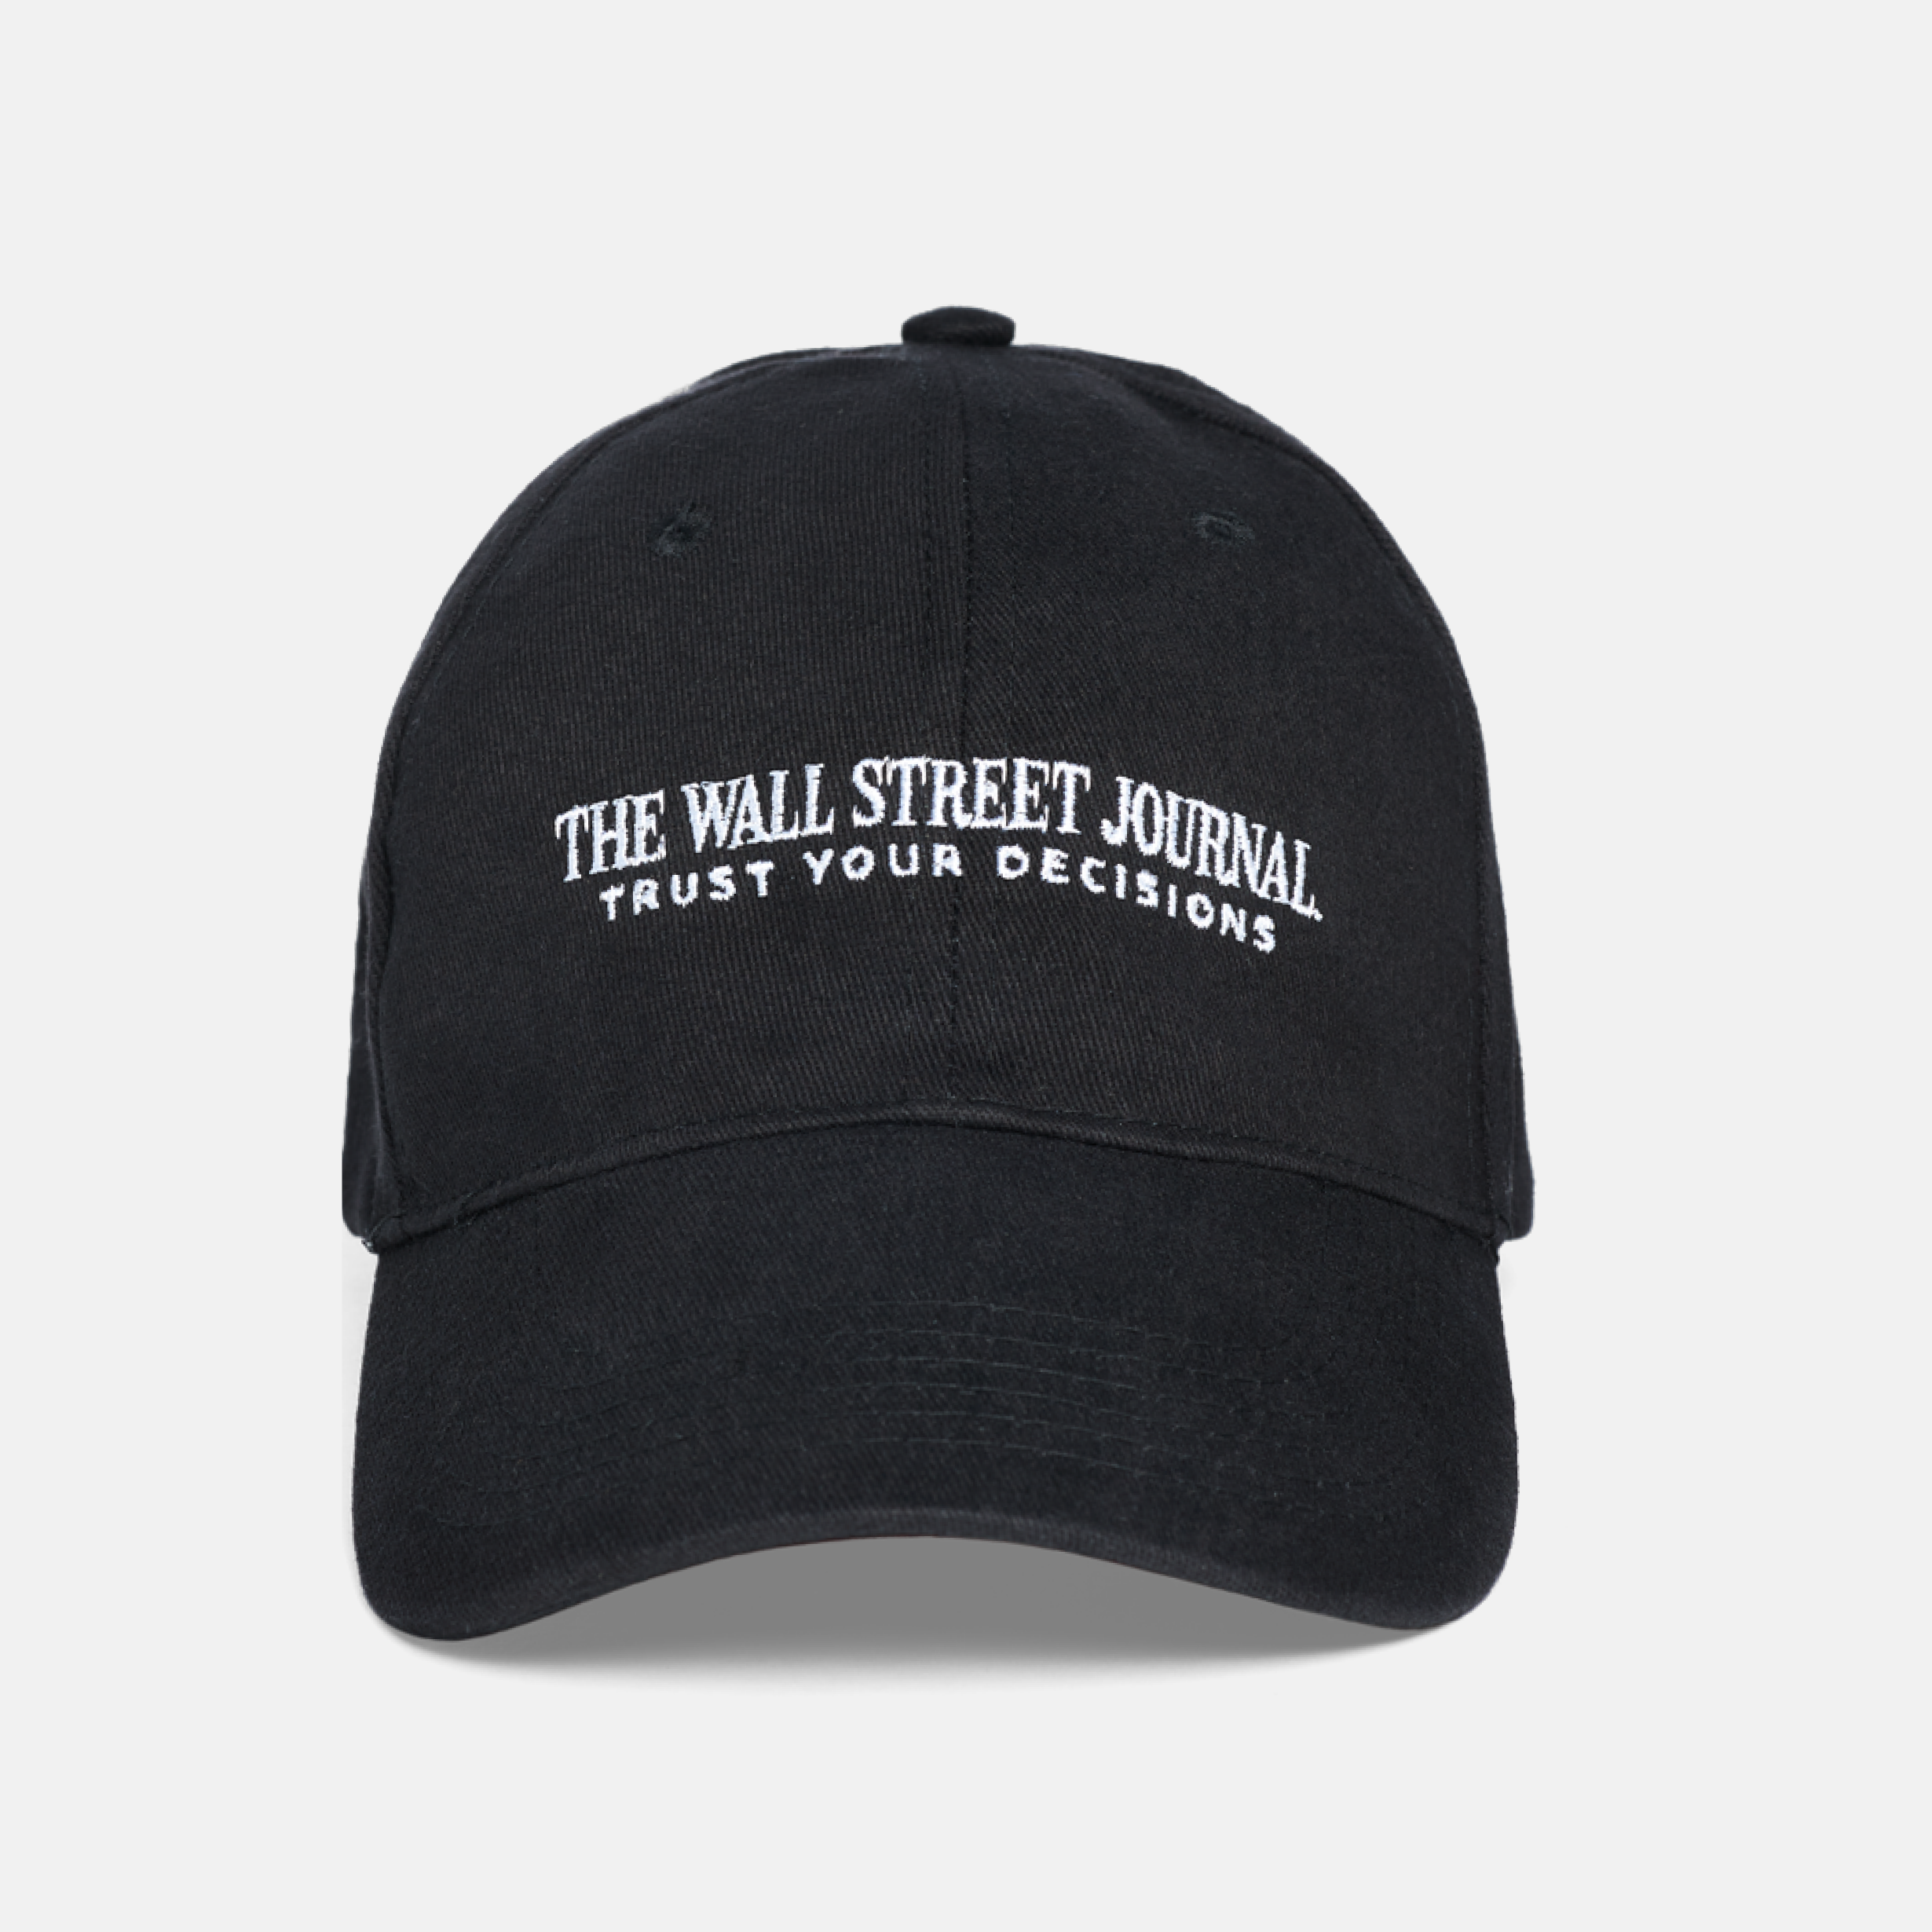 as hat black